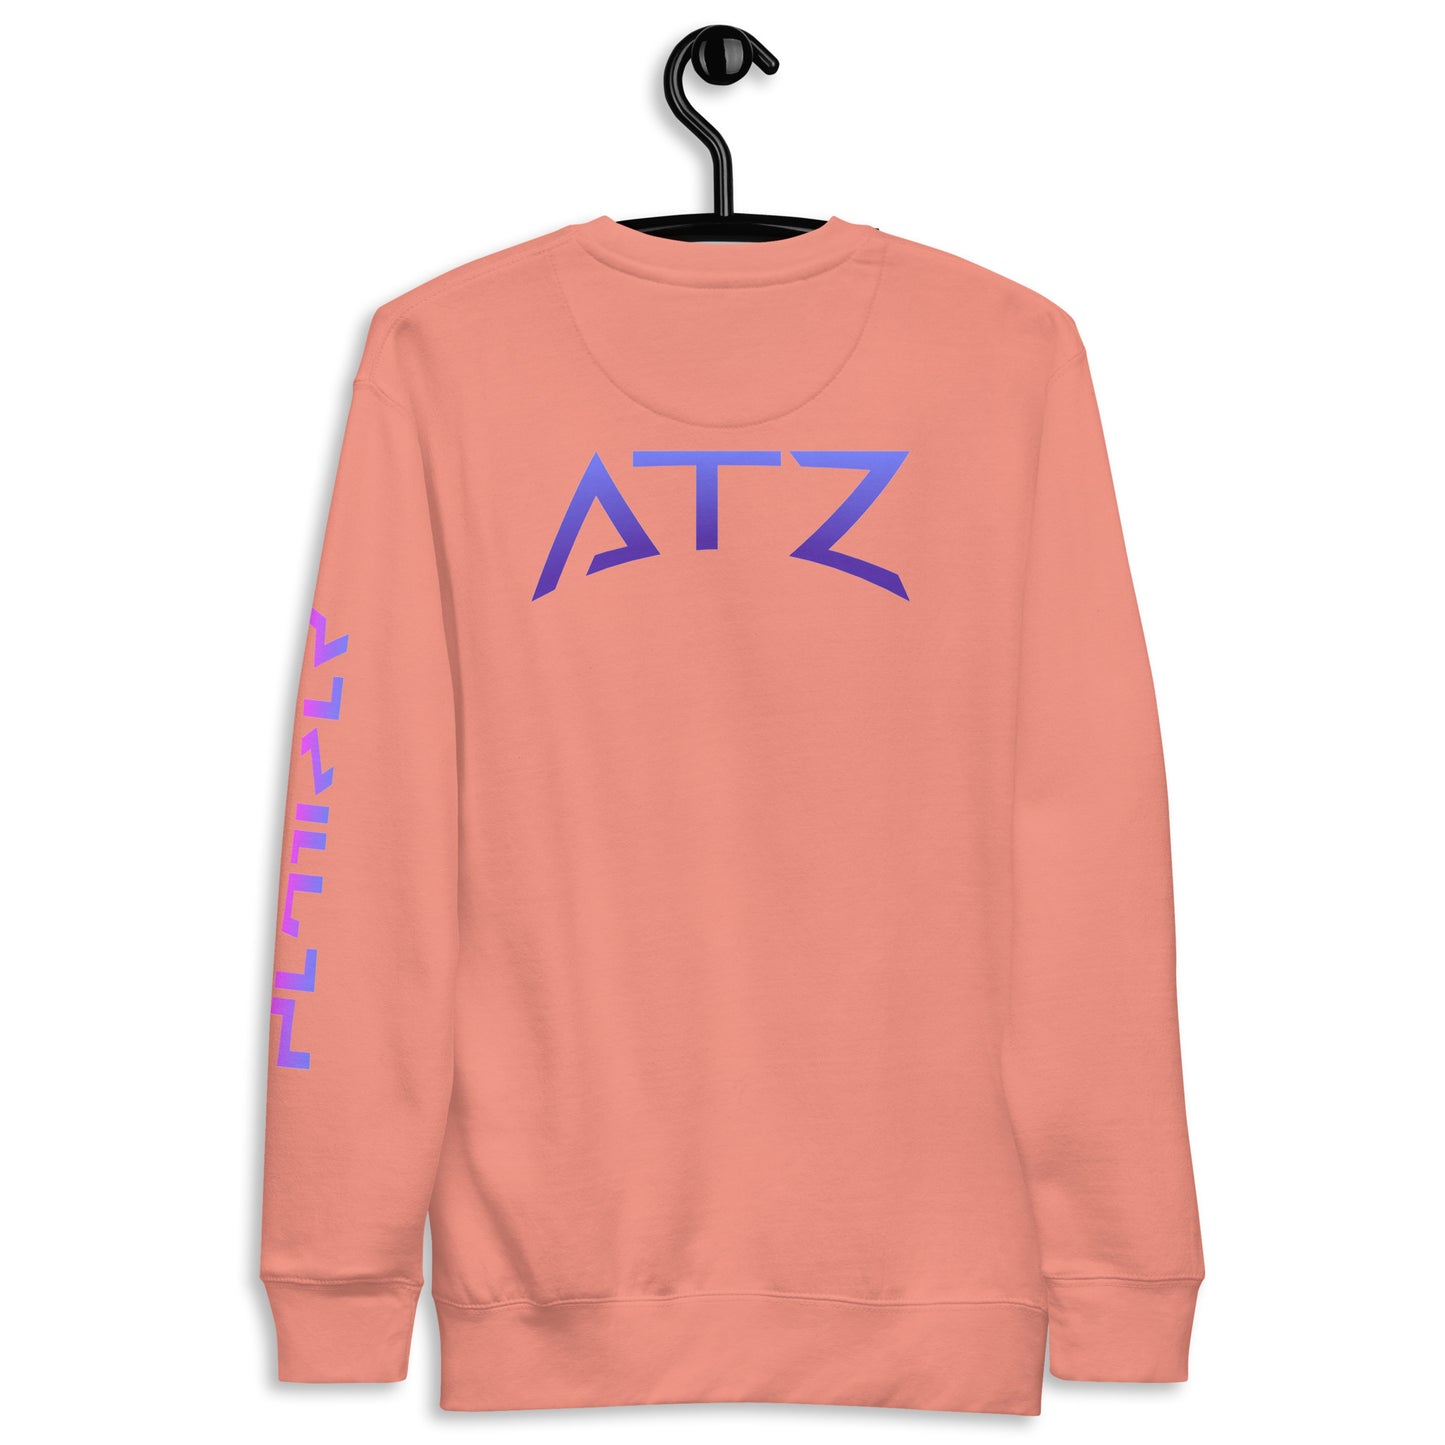 ATZ Unisex Premium Sweatshirt